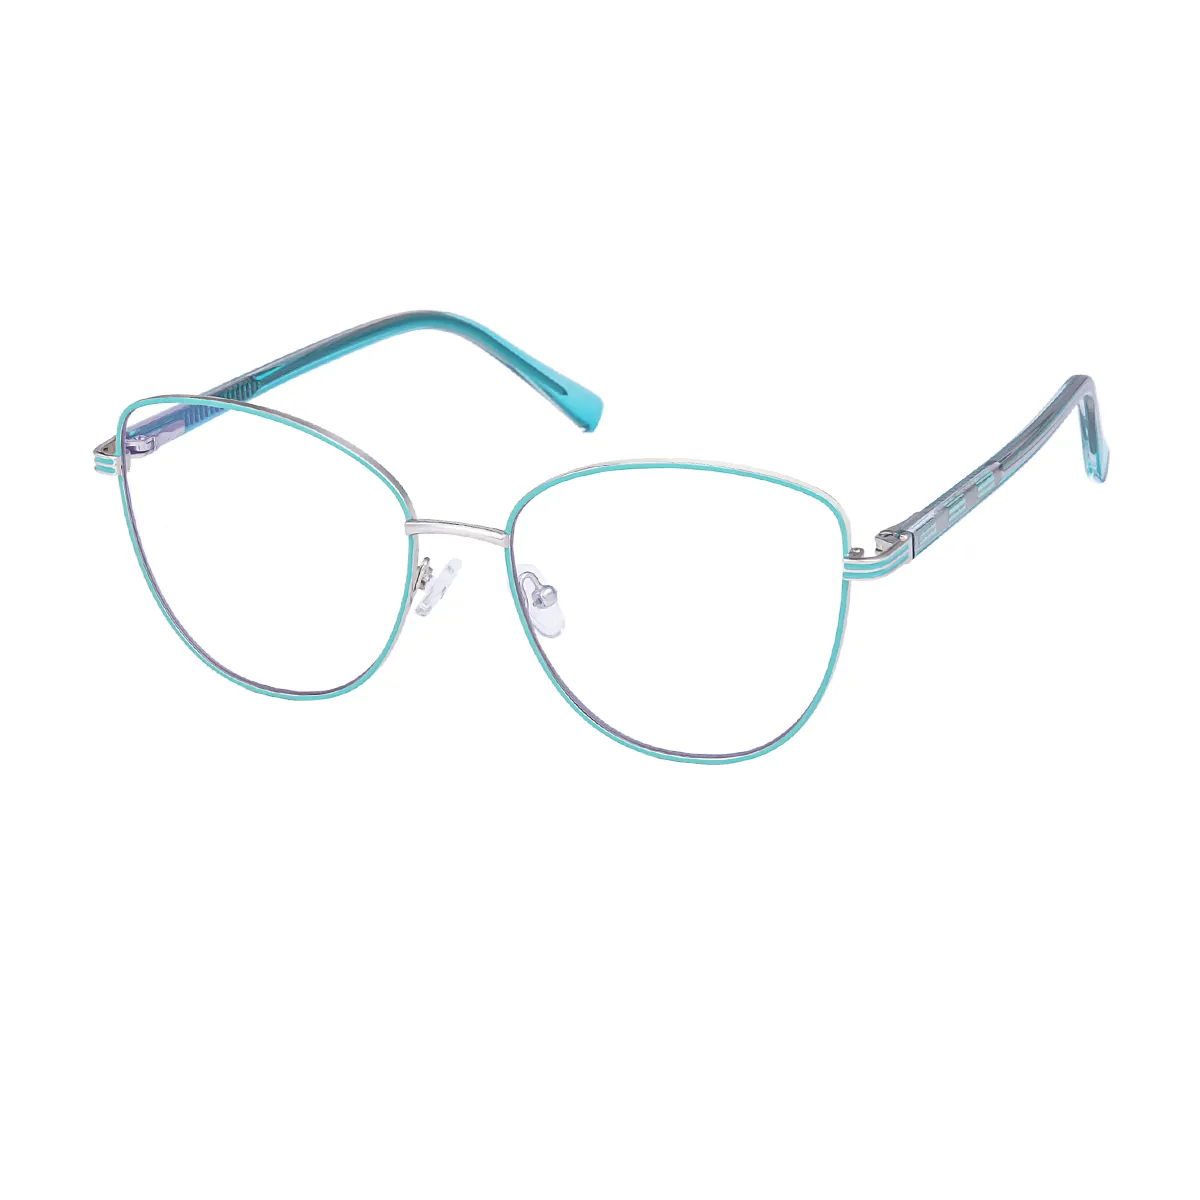 Evangeline - Square Silver Glasses for Women